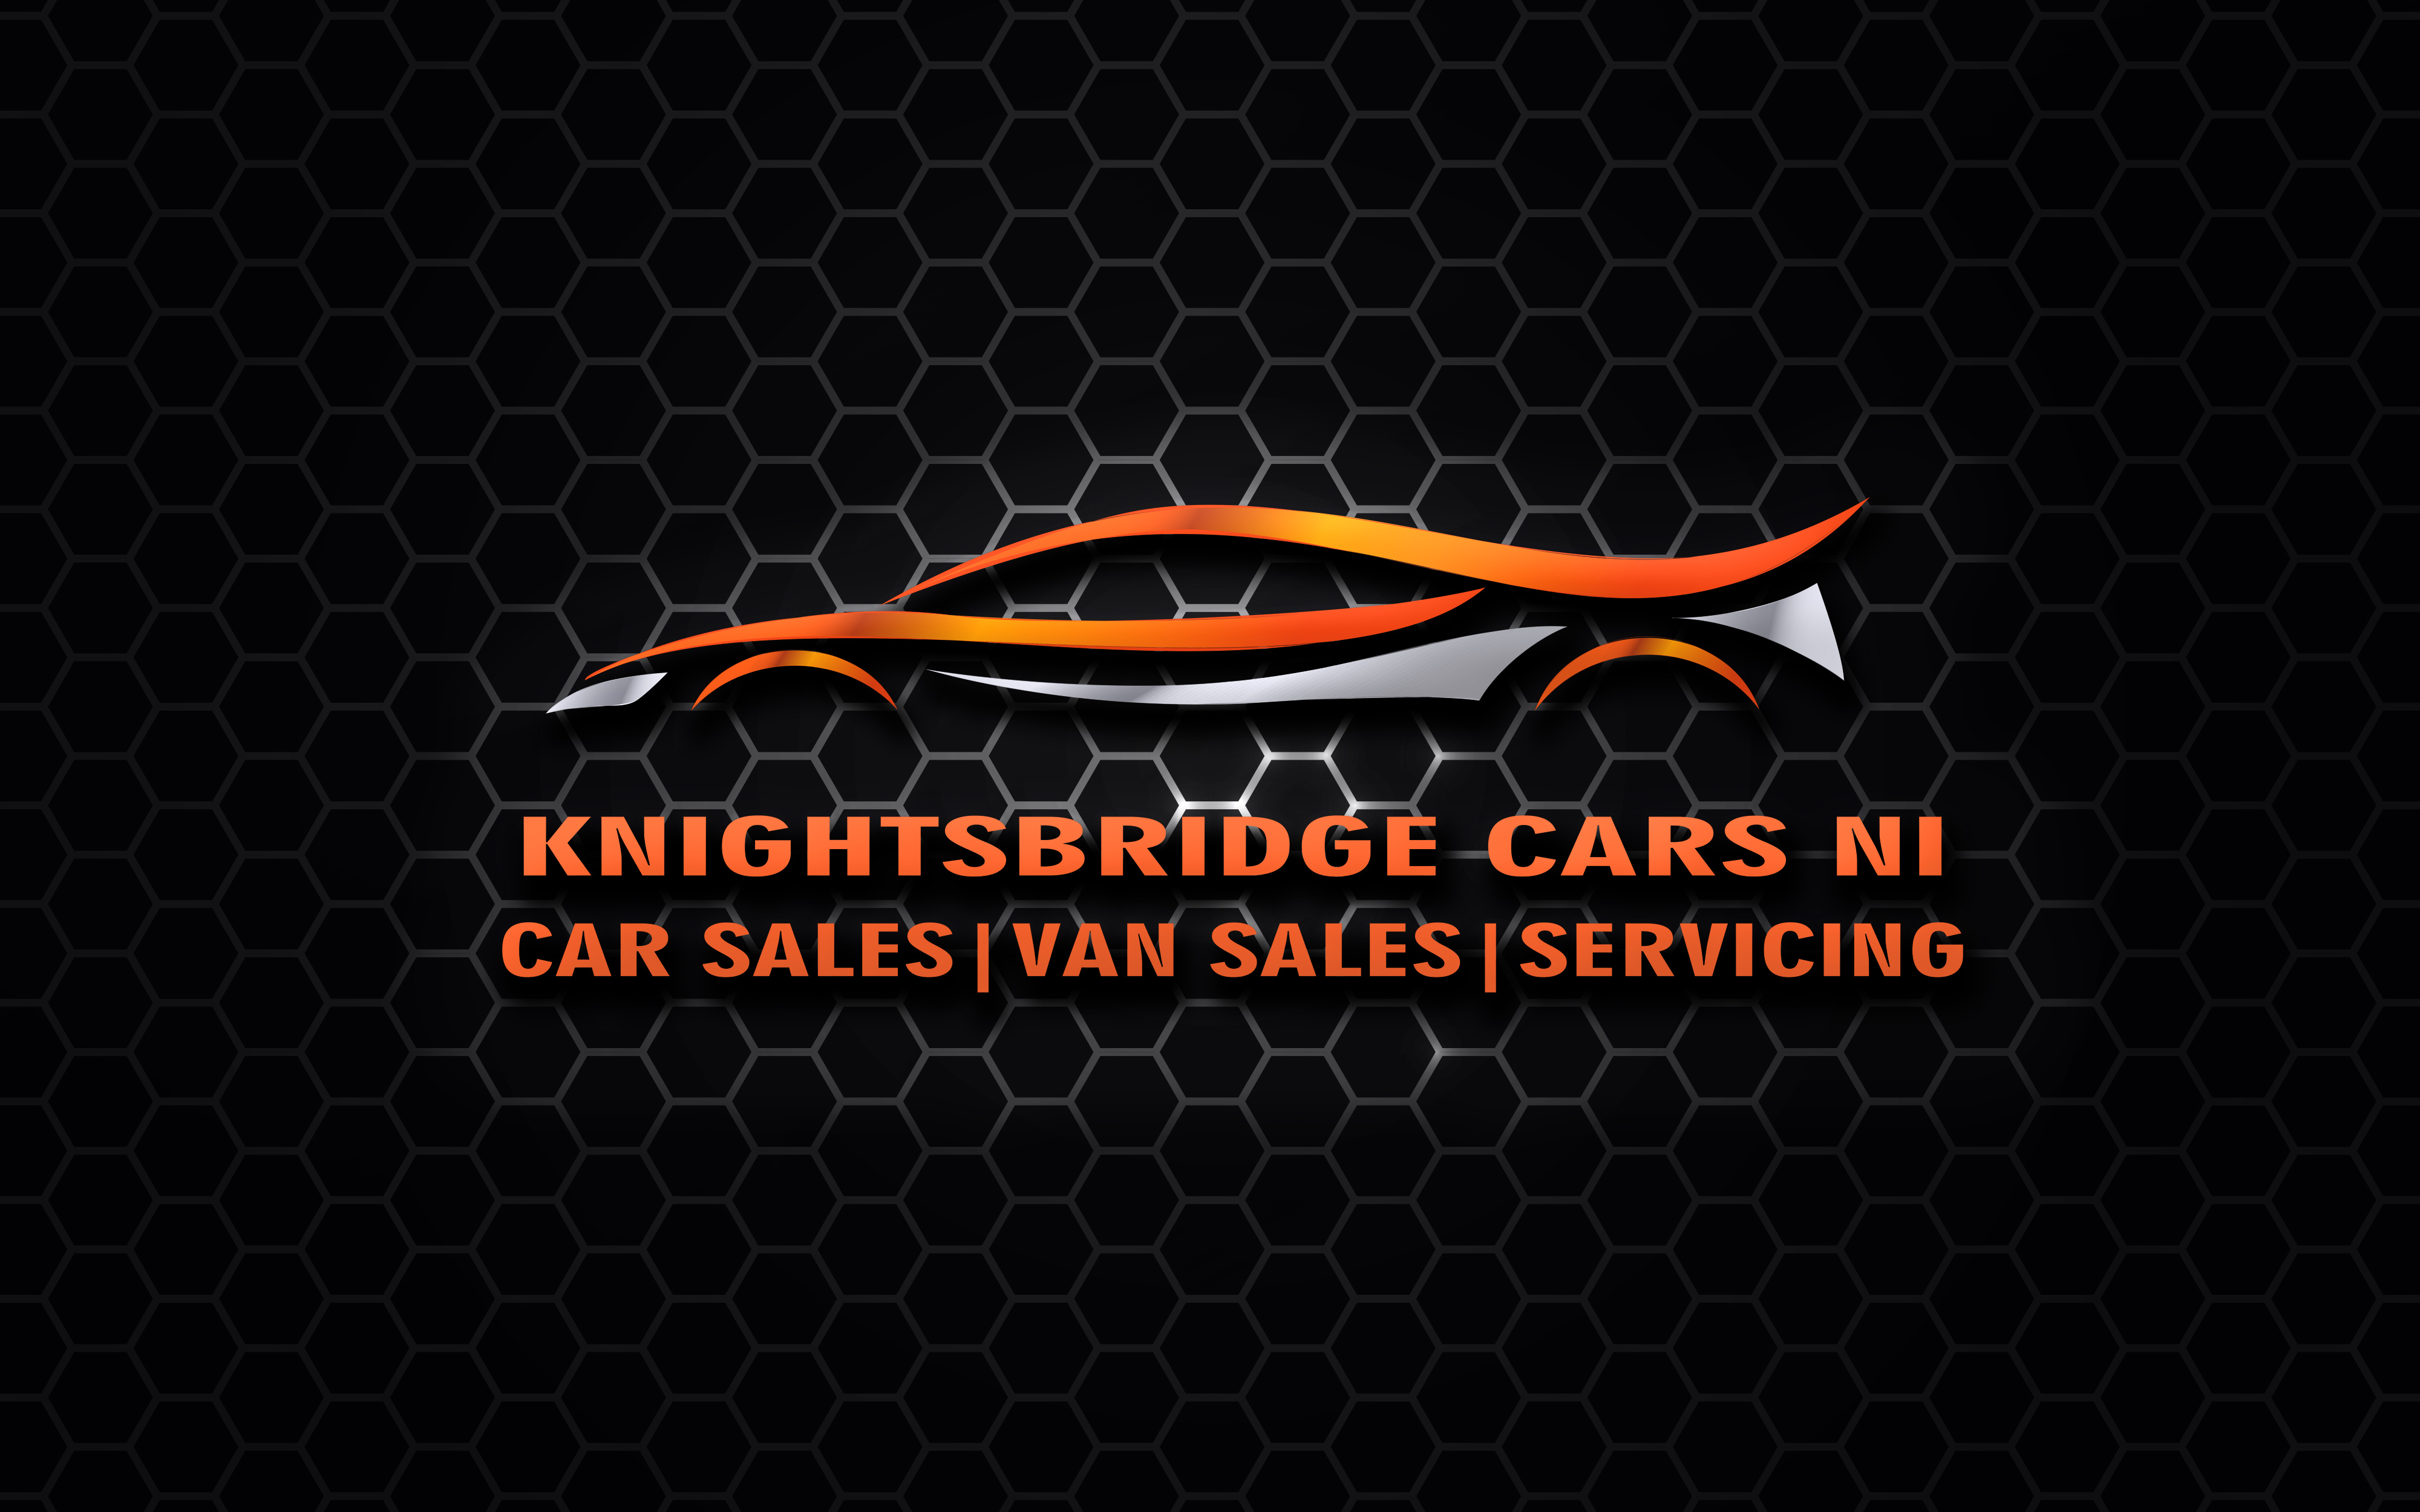 Knightsbridge Cars NI